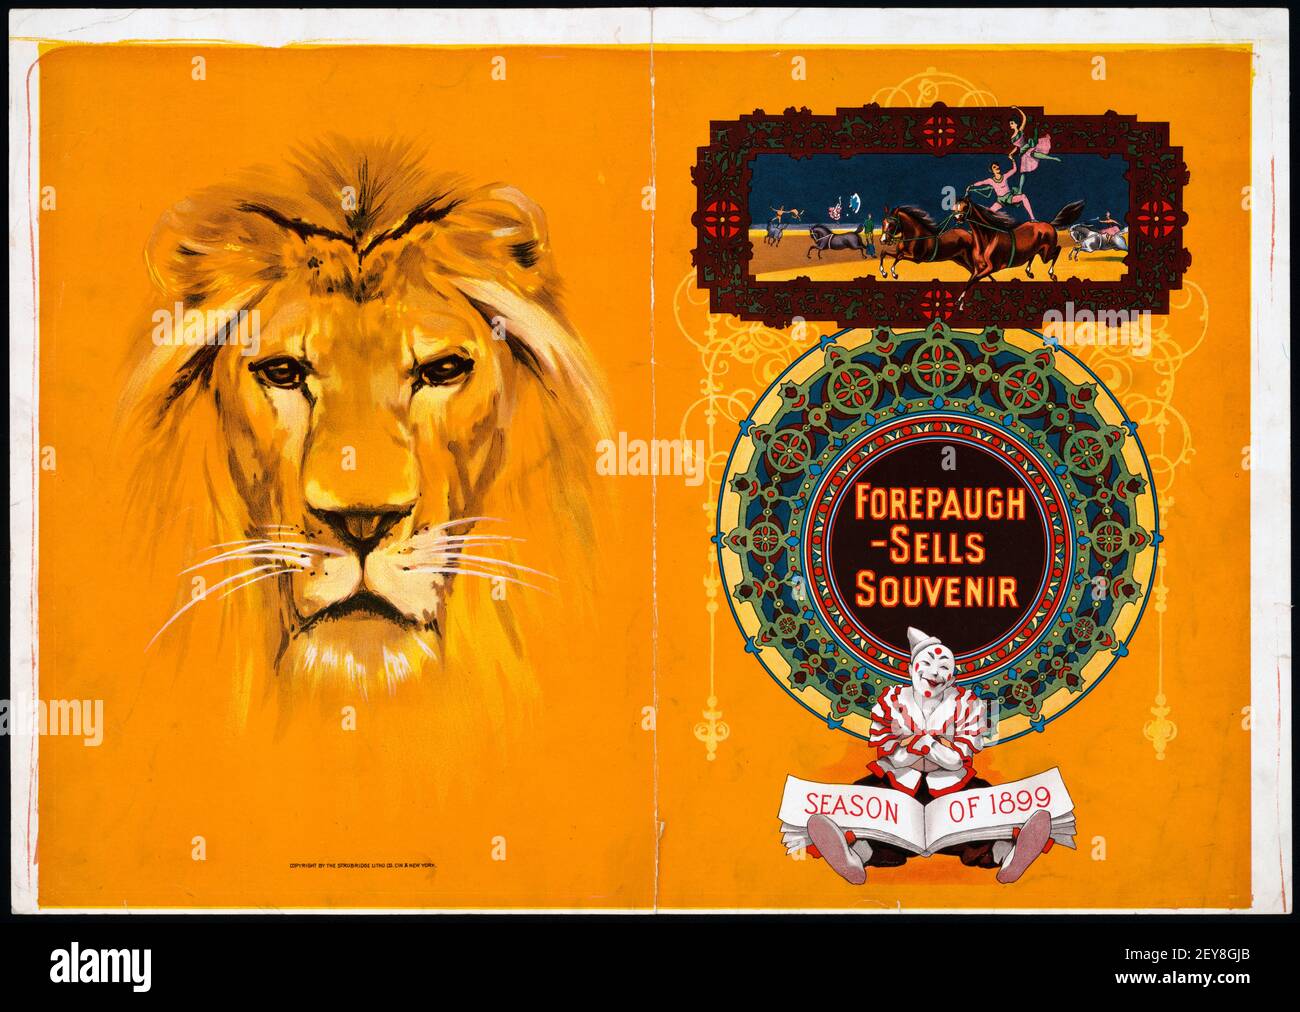 Circus: Forepaugh – verkauft Souvenir, Saison 1899, illustriert mit einem schönen Löwen und einem Clown. Stockfoto